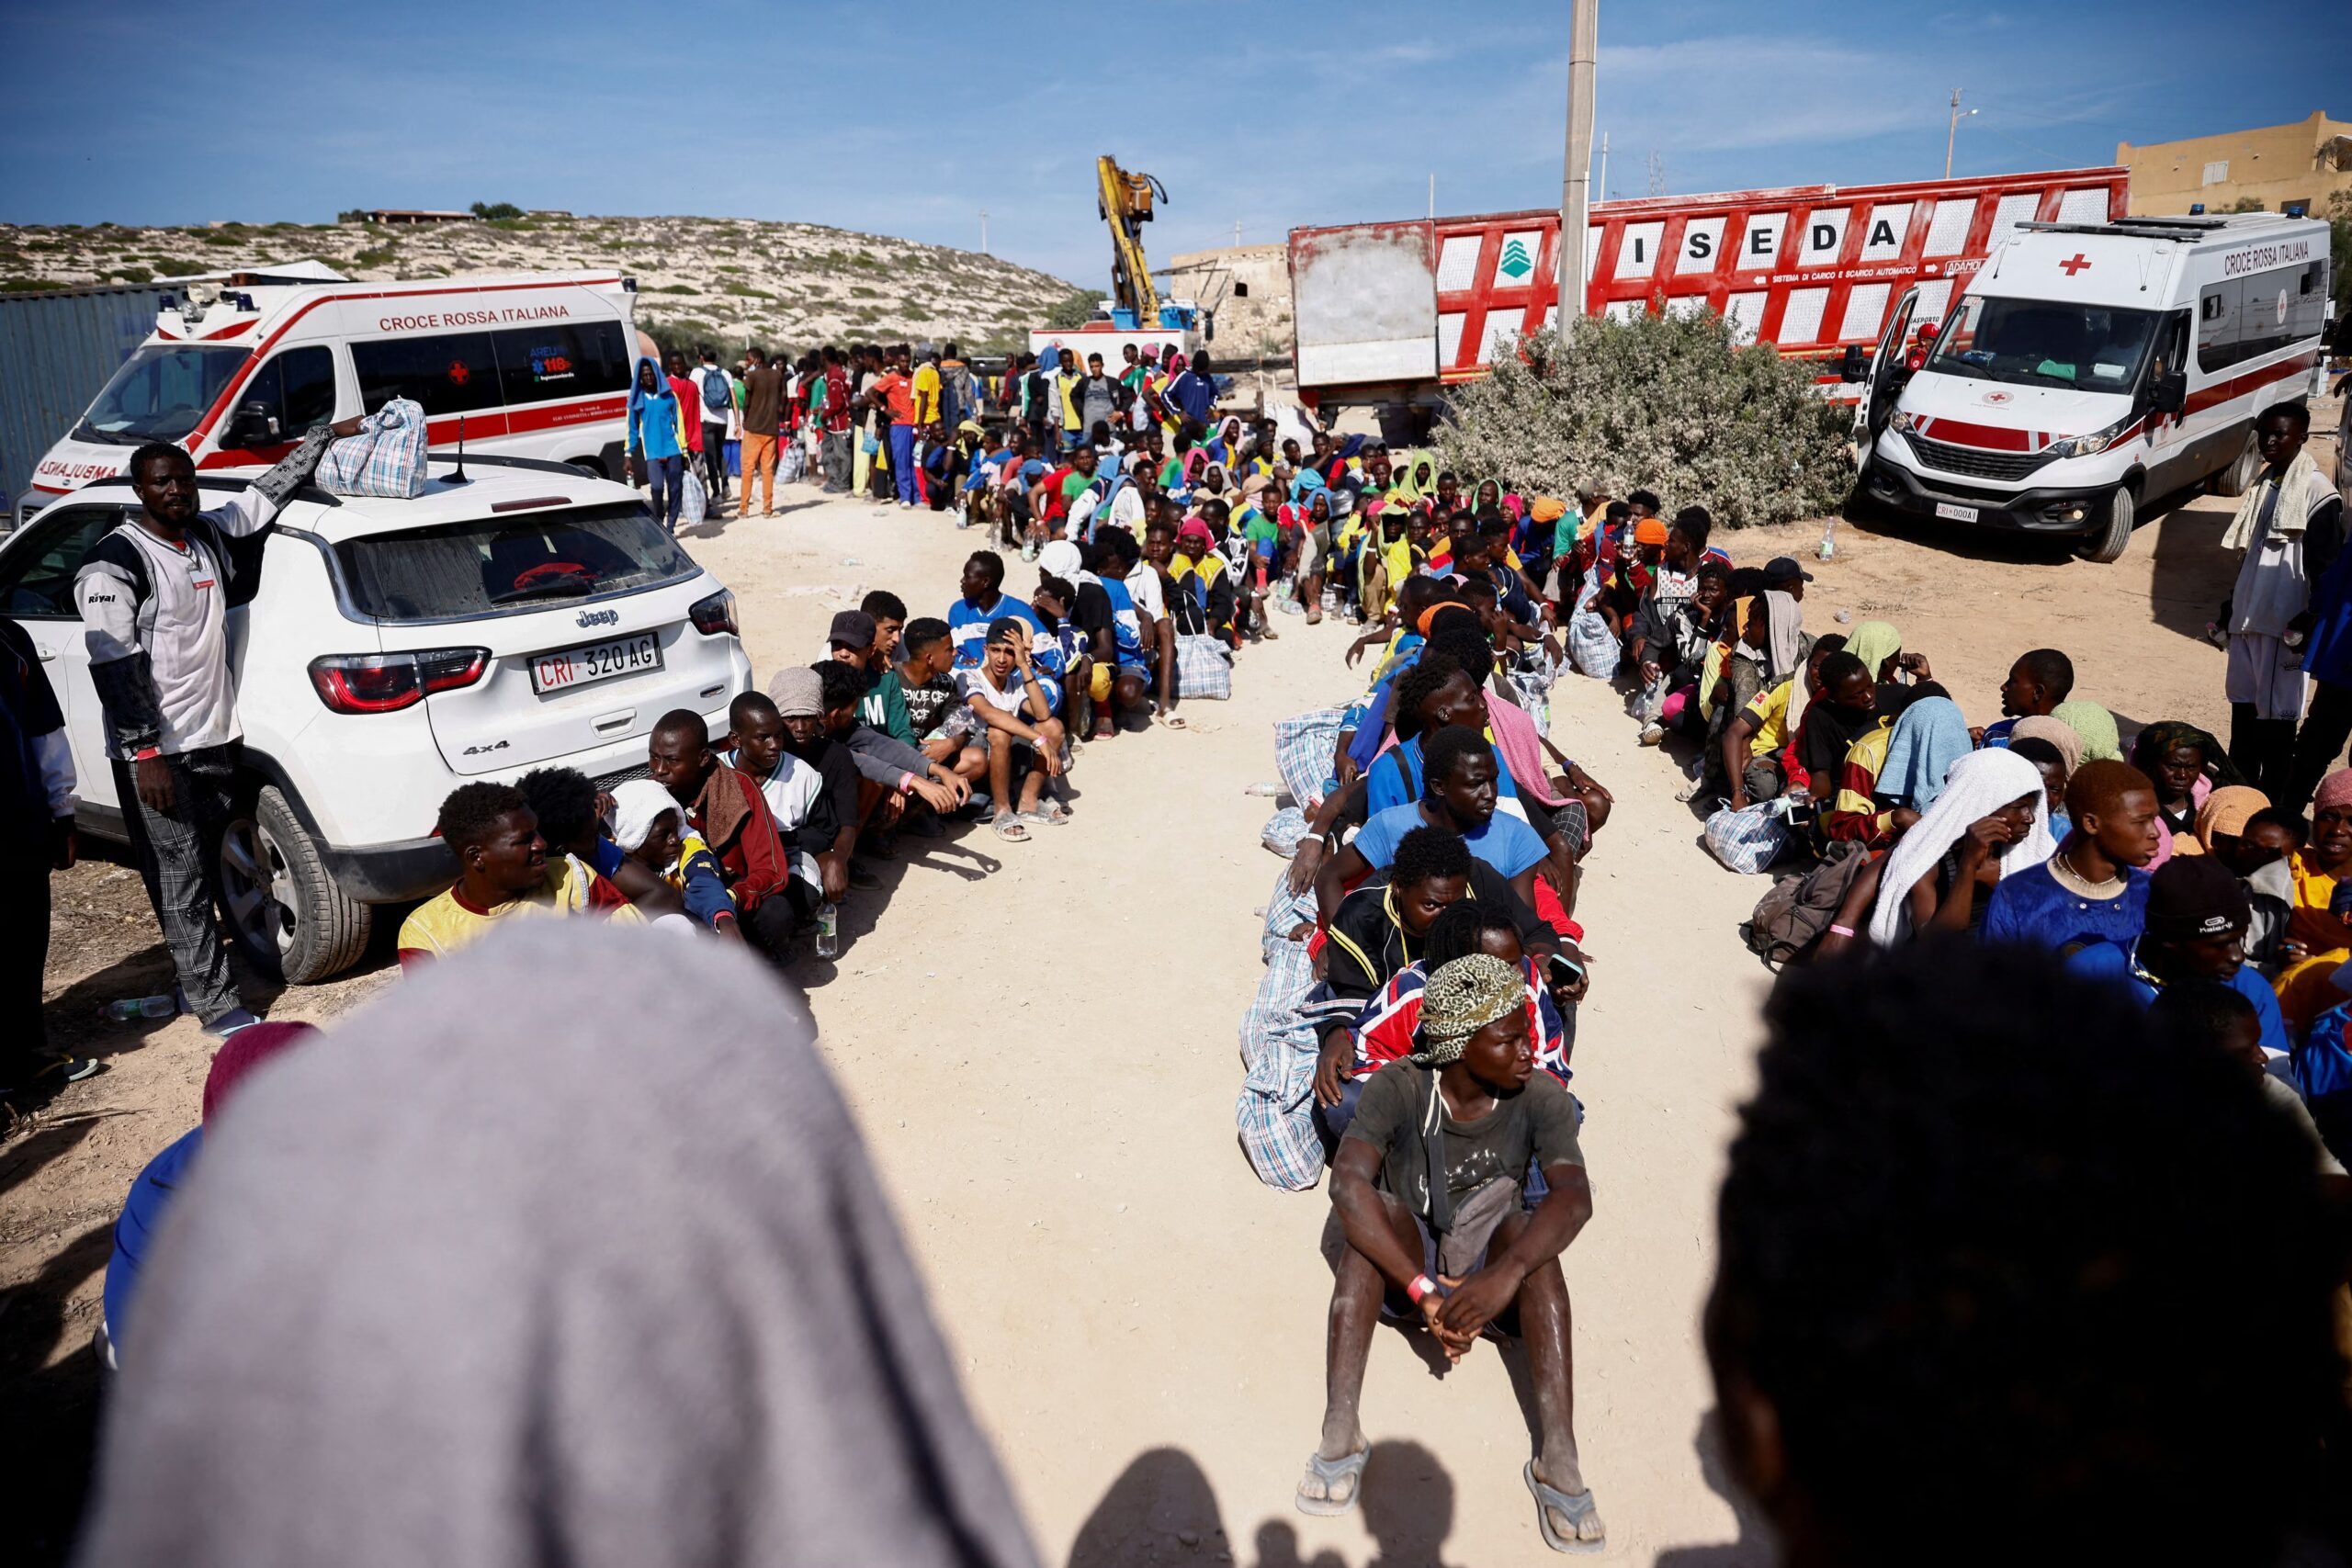 La llegada de migrantes a Lampedusa  desató la peor crisis migratoria en Italia